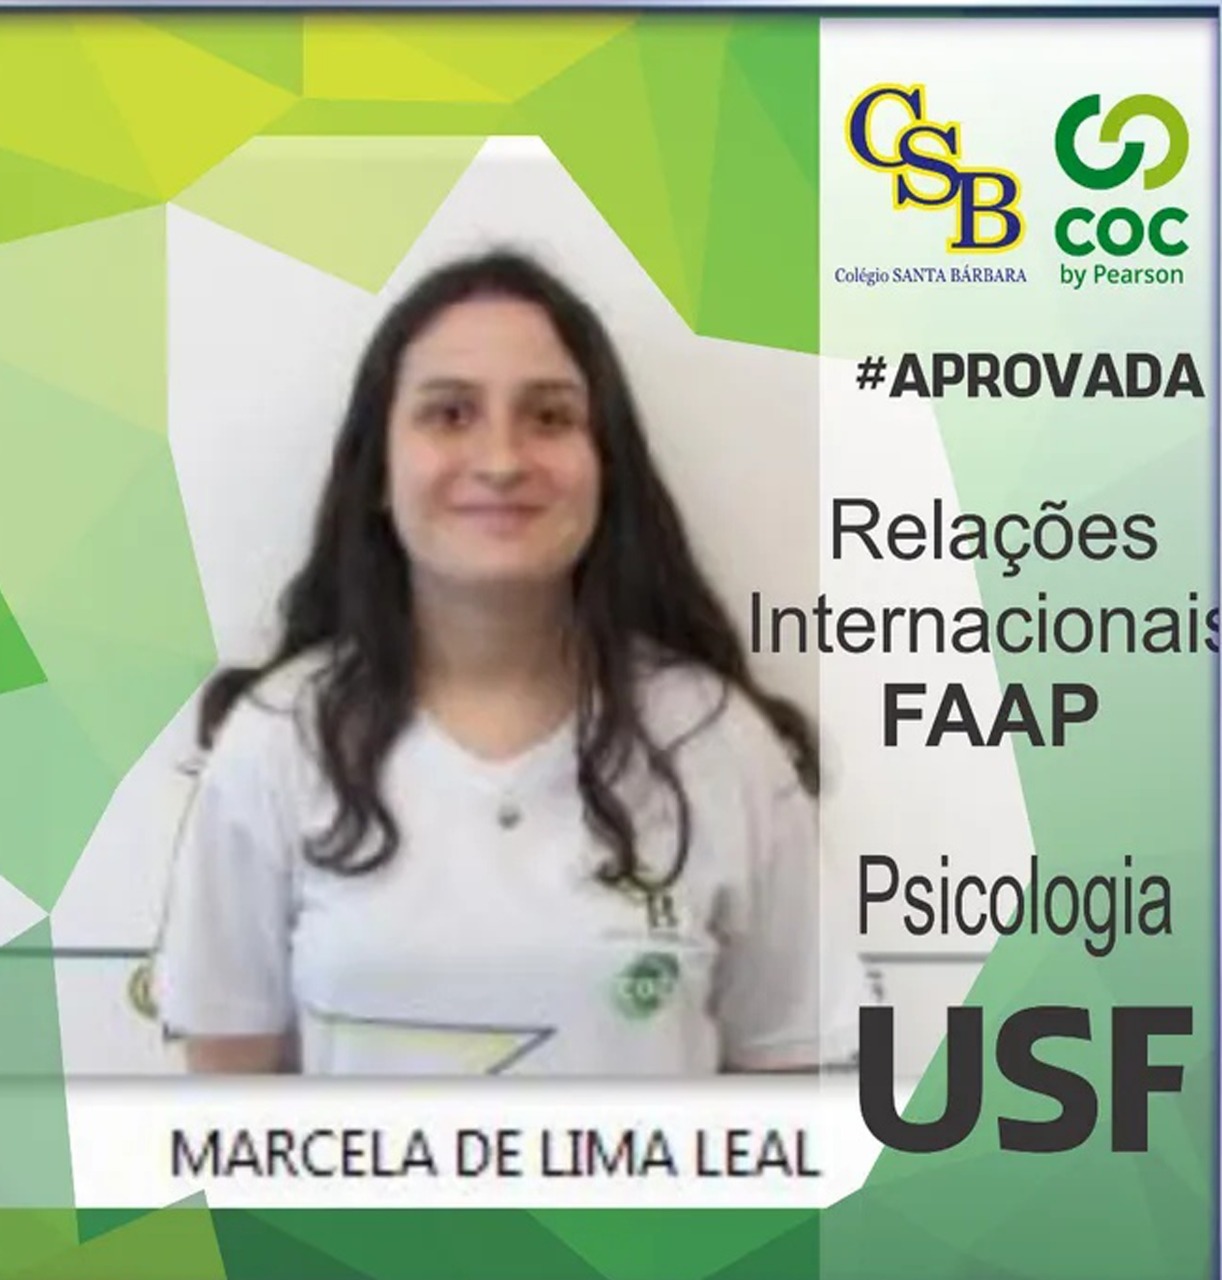 Marcela de Lima Leal